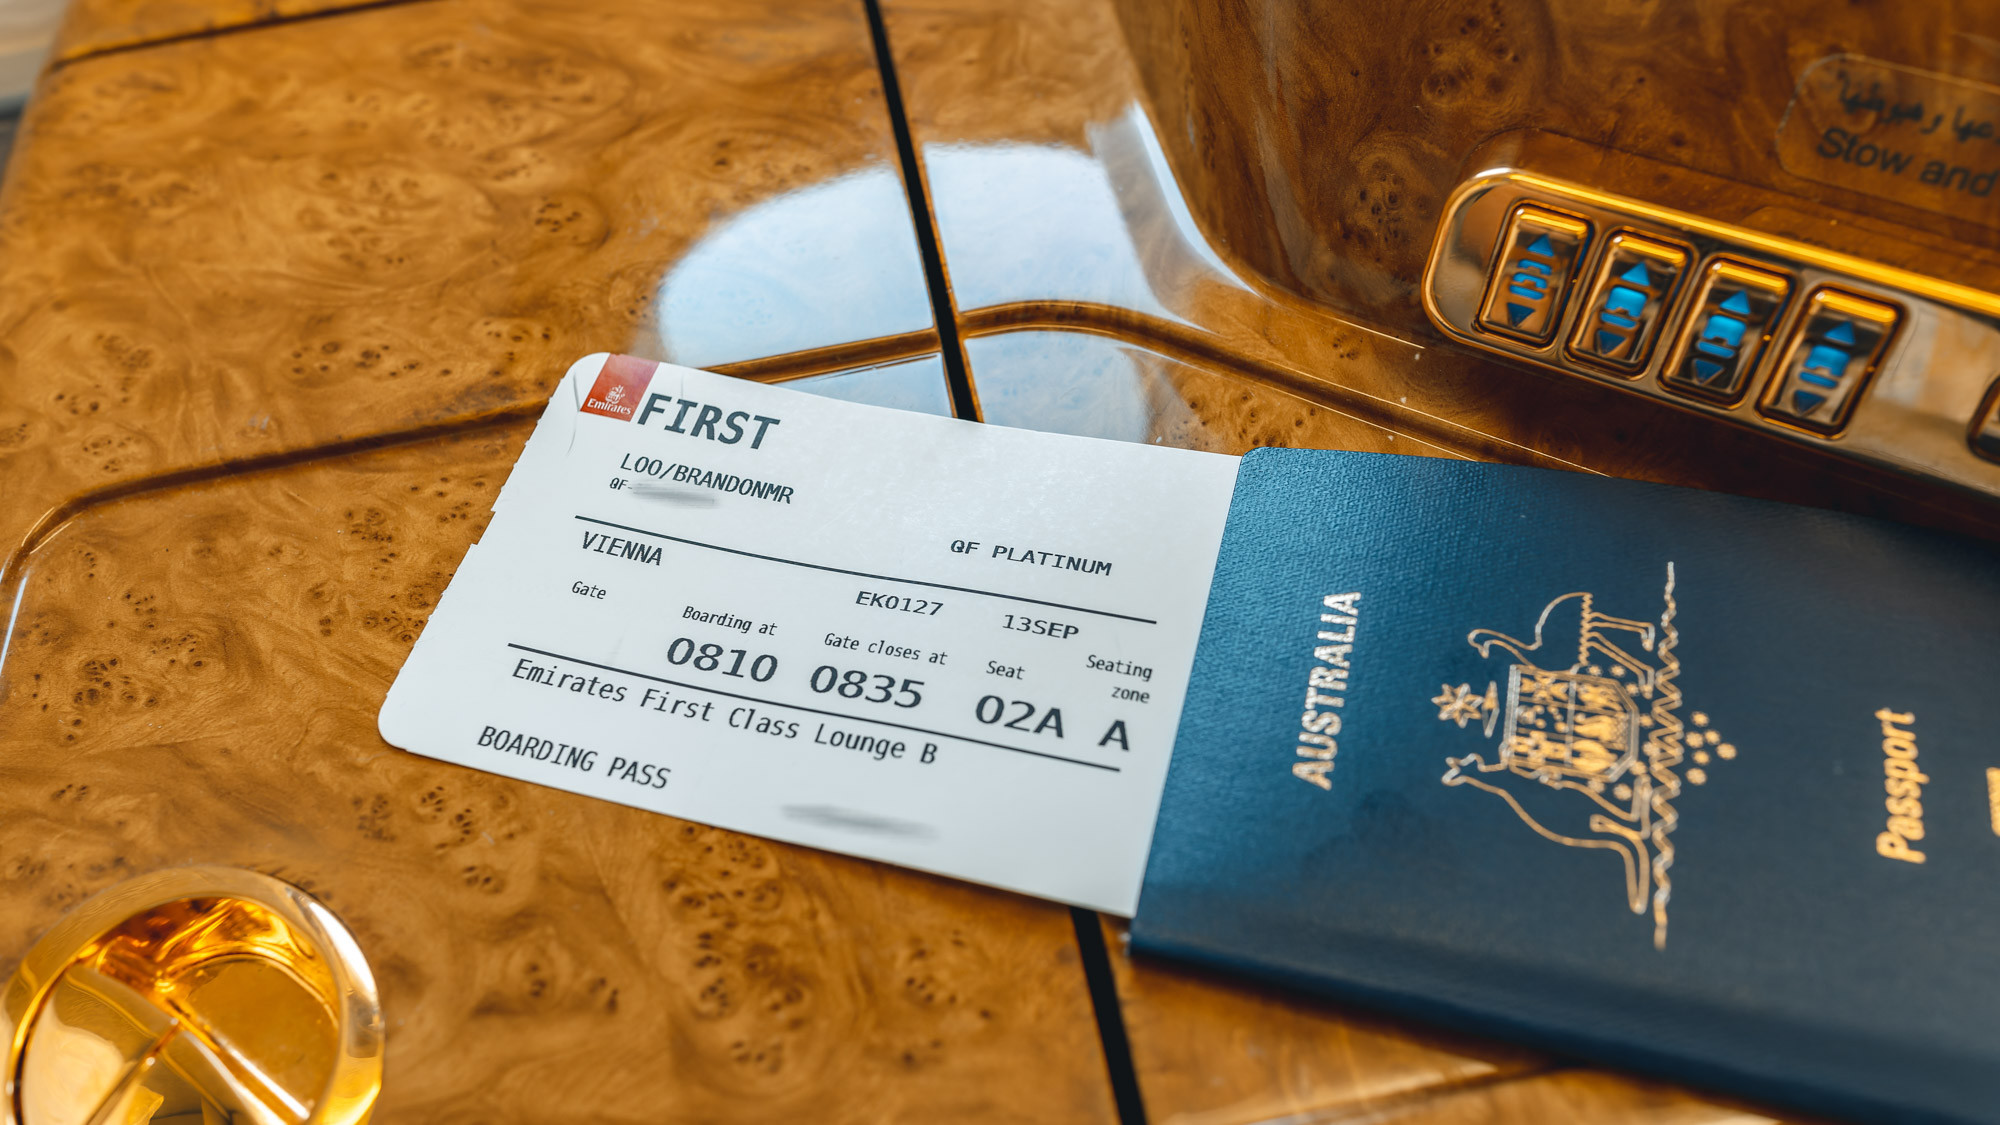 Emirates First Class boarding pass